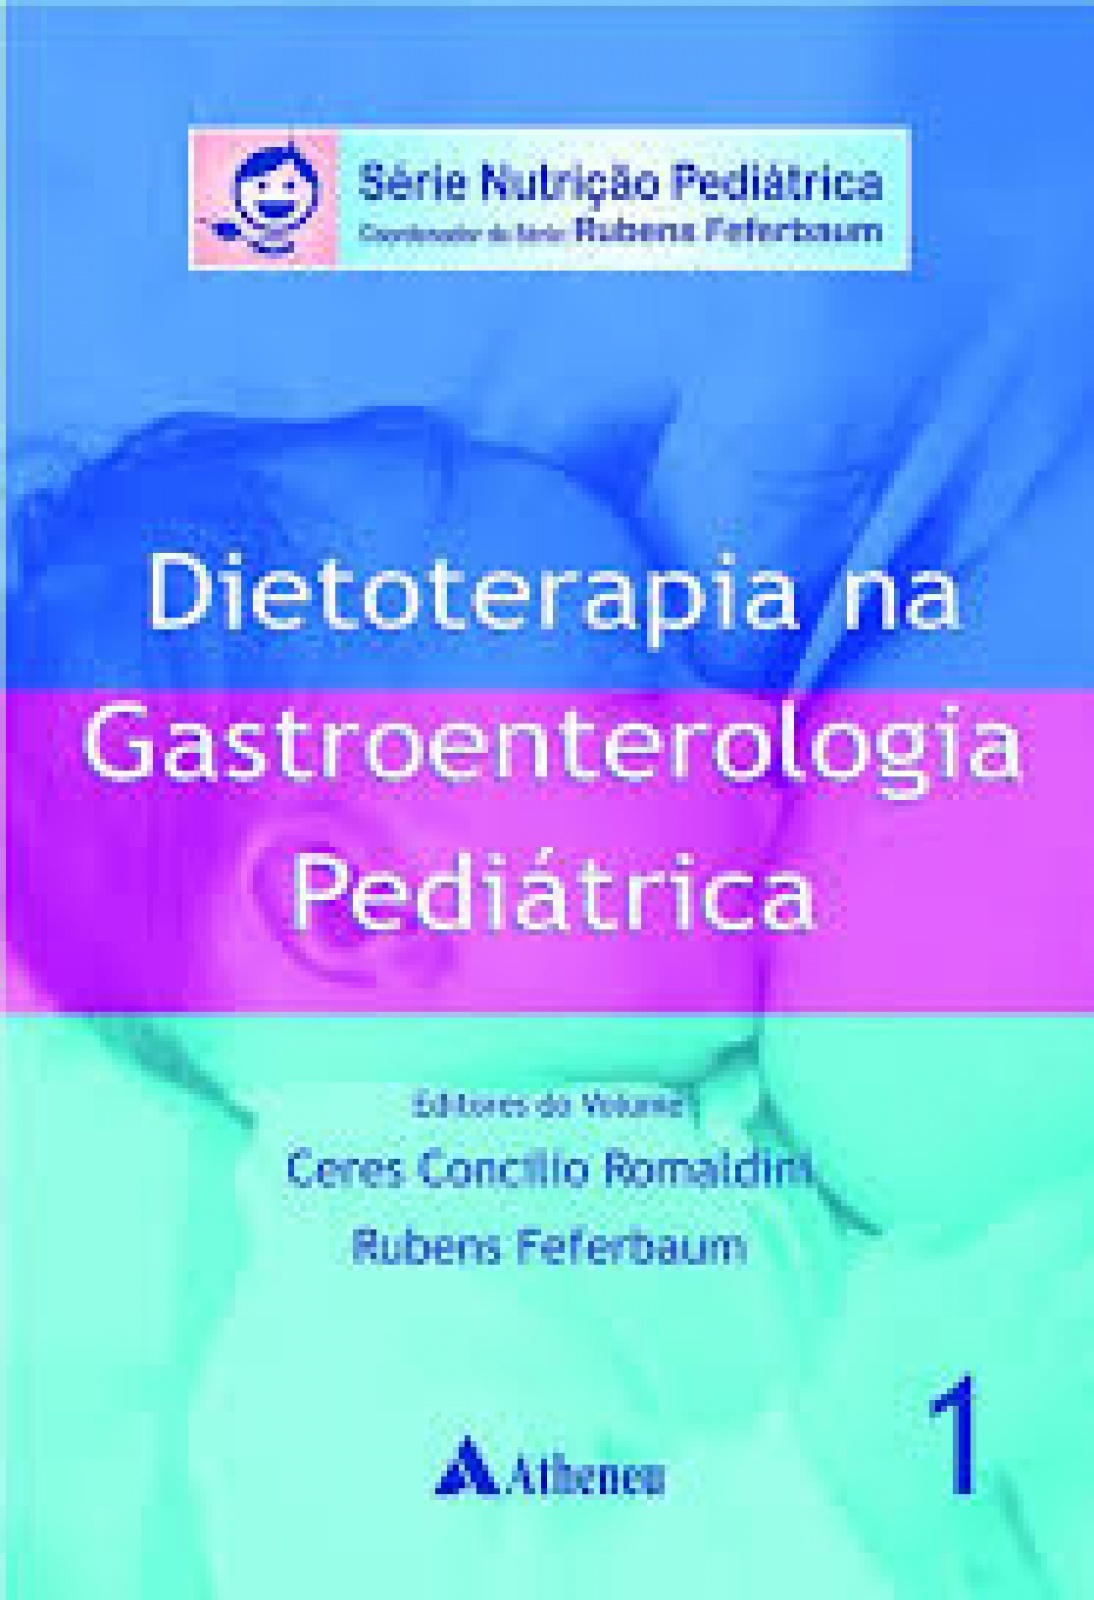 Série Nutrição Pediátrica : Dietoterapia Na Gastroenterologia Pediátrica - Vol.i